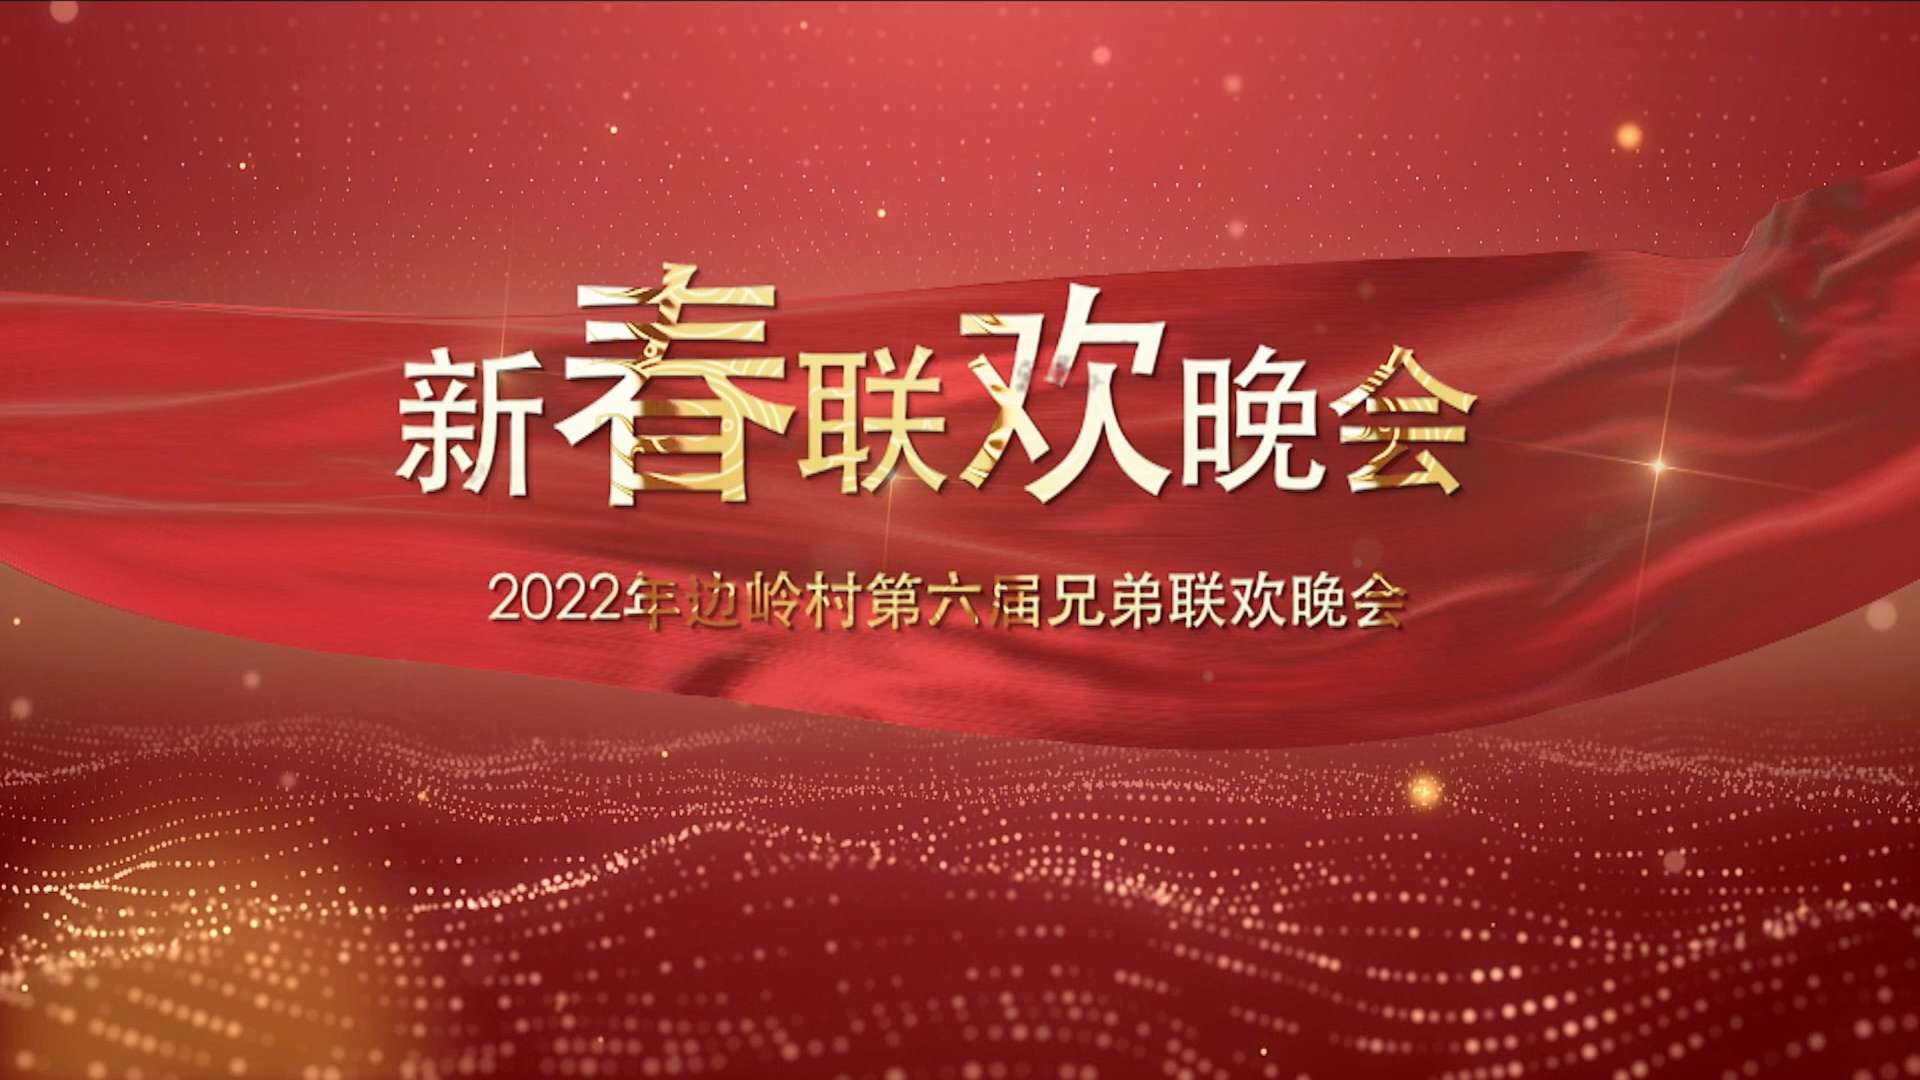 2022年边岭村第六届兄弟联欢晚会